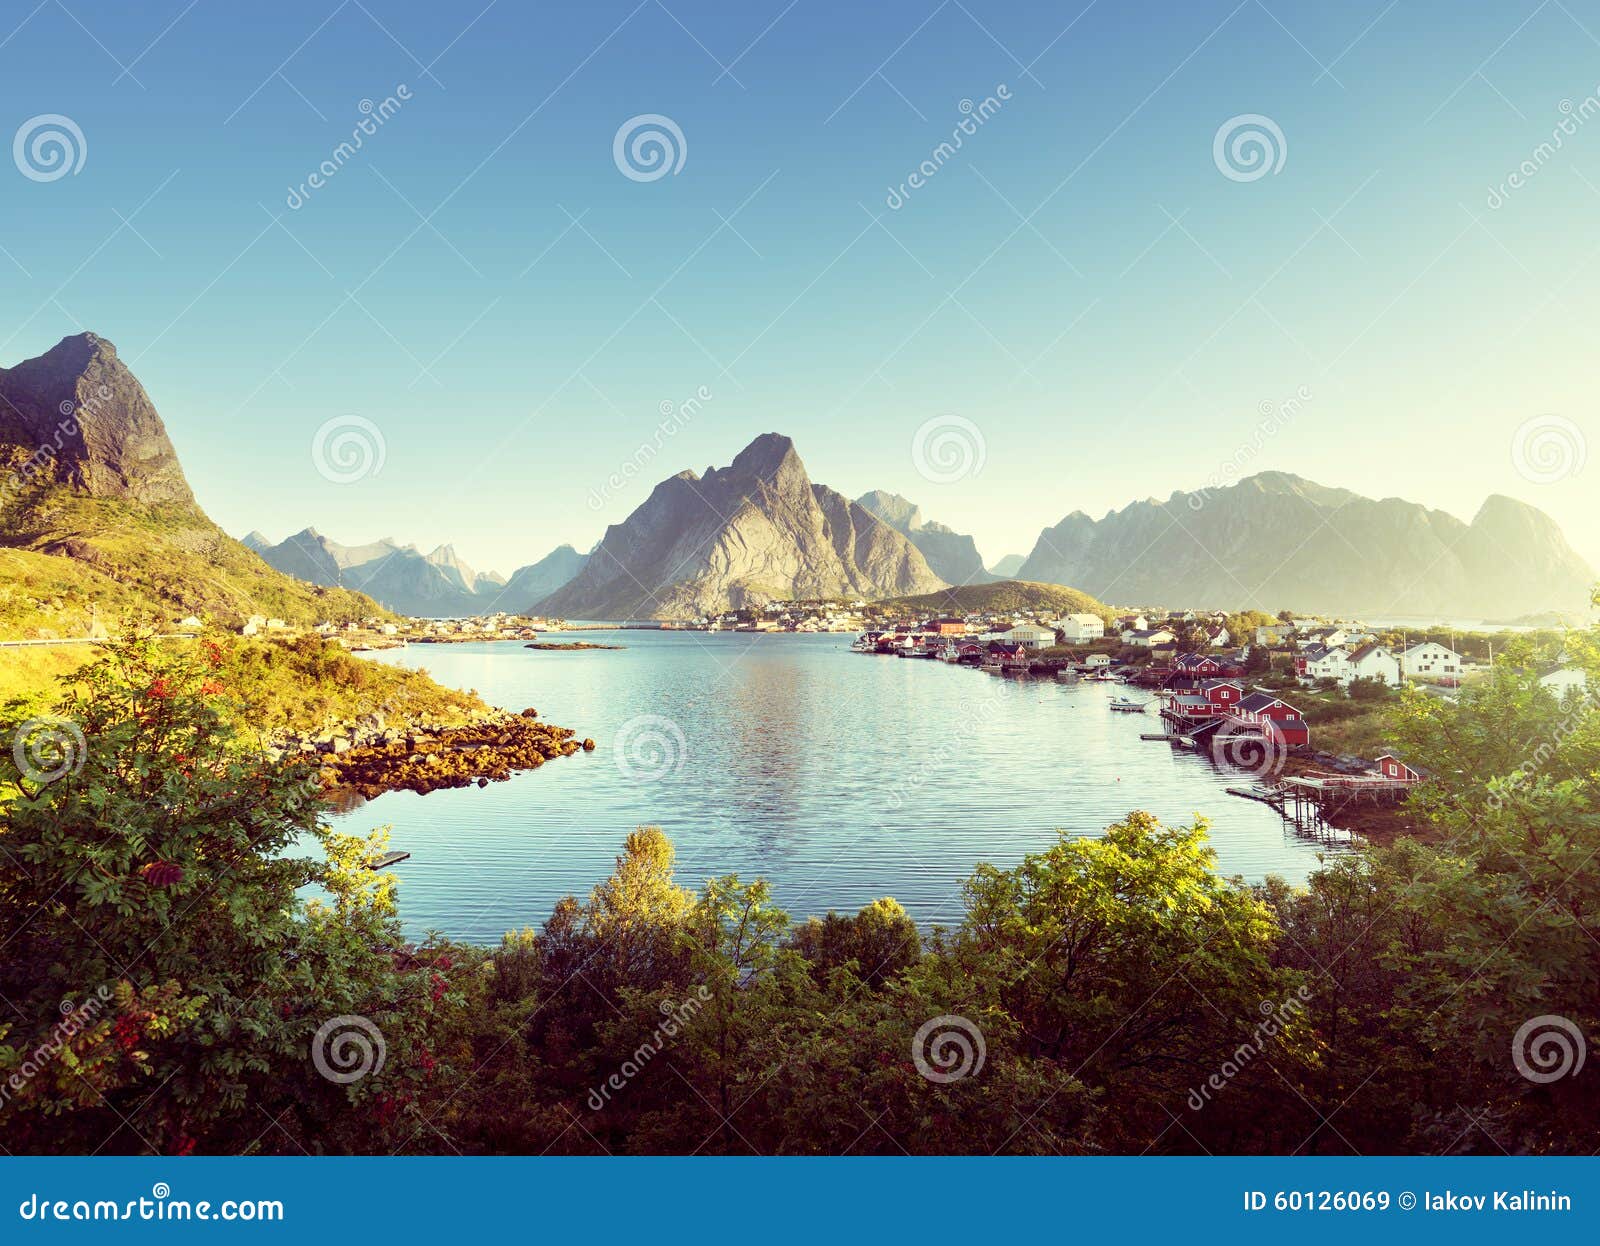 reine village, lofoten islands, norway